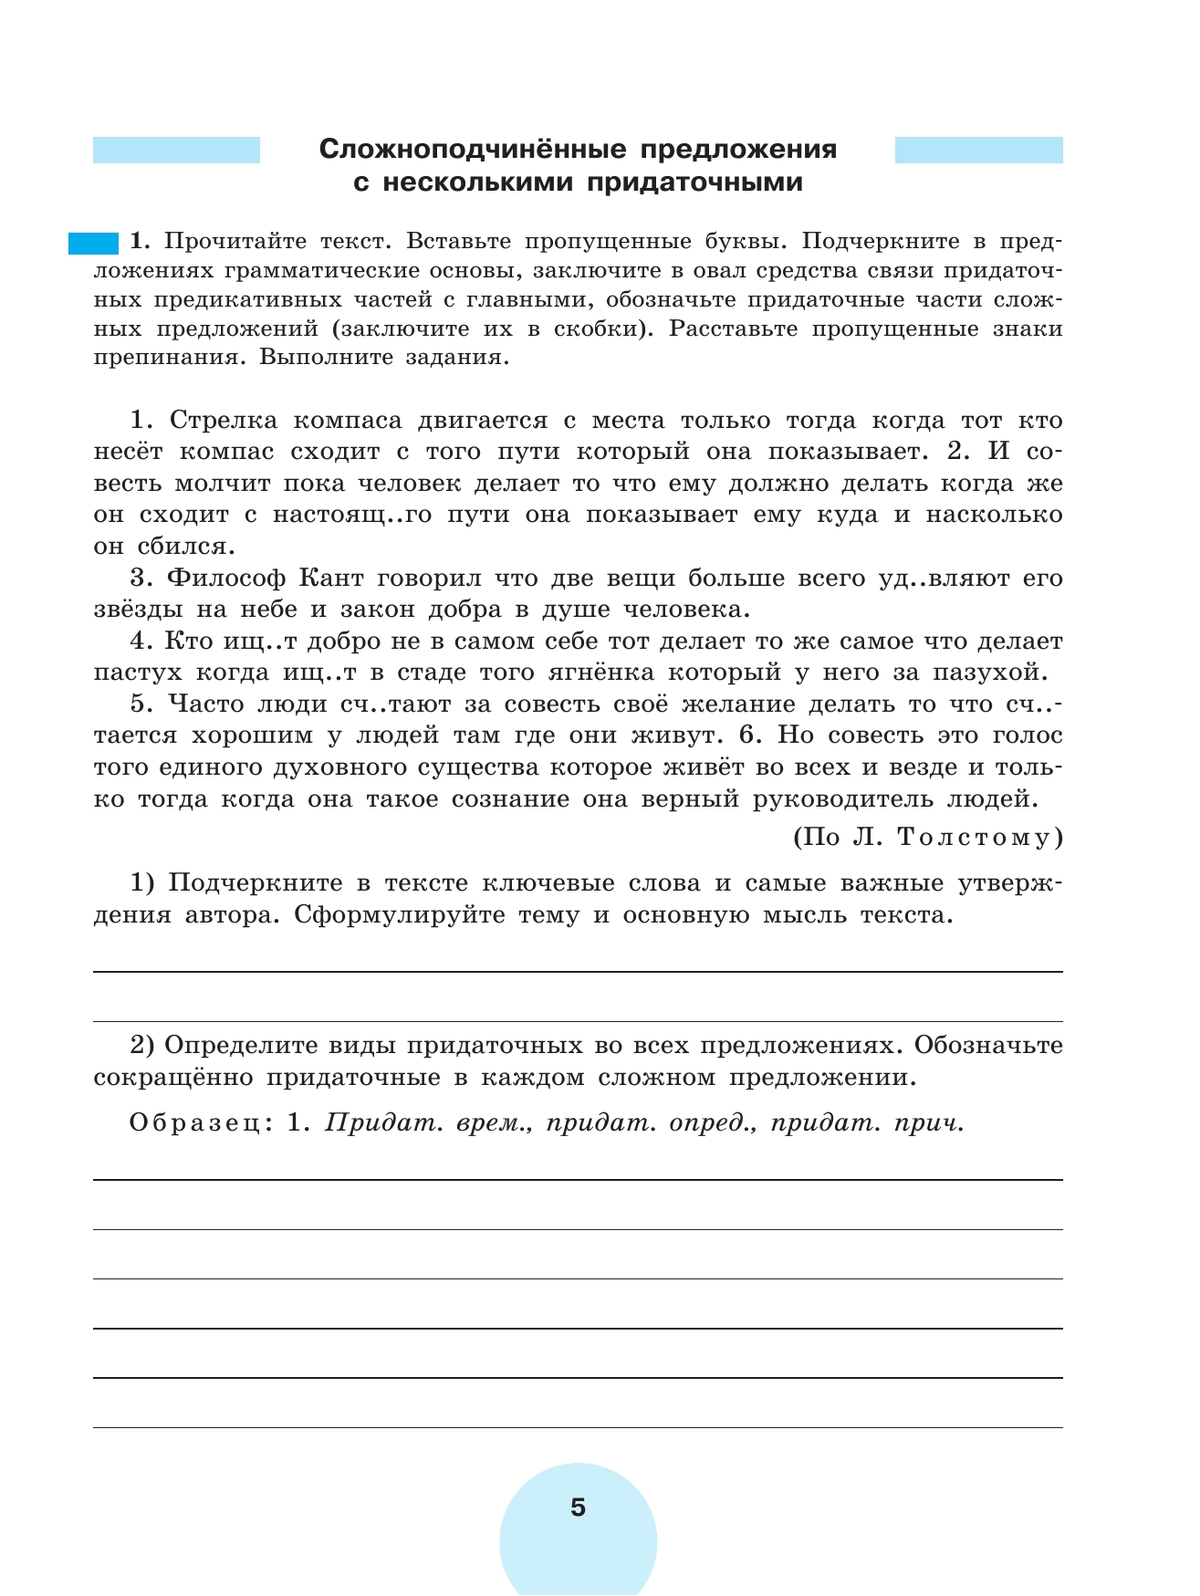 Русский язык. Рабочая тетрадь. 9 класс. В 2 ч. Часть 2 6